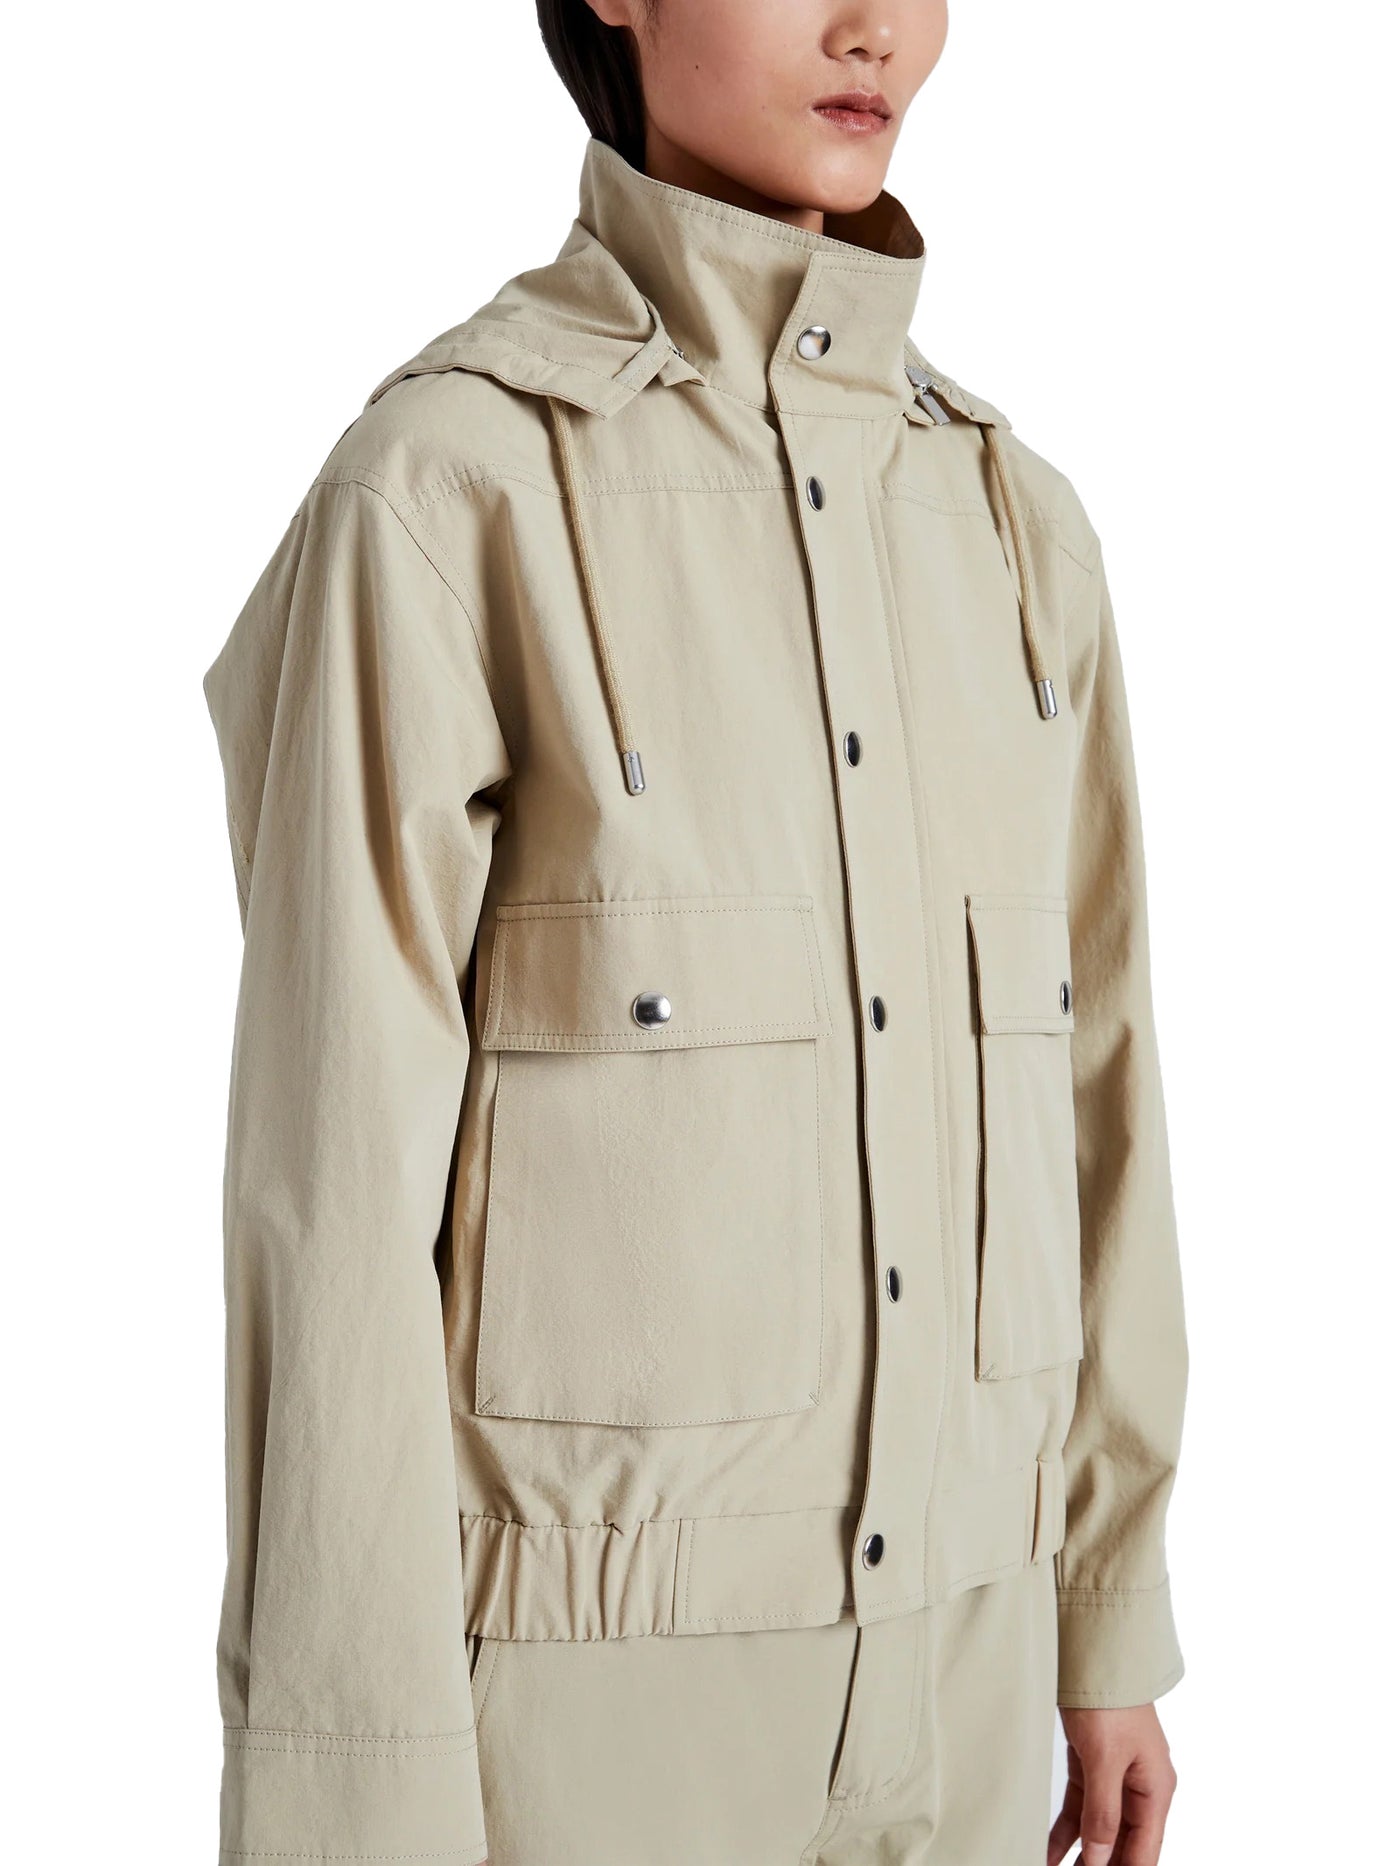 Windsor Jacket in Rumpled Cotton